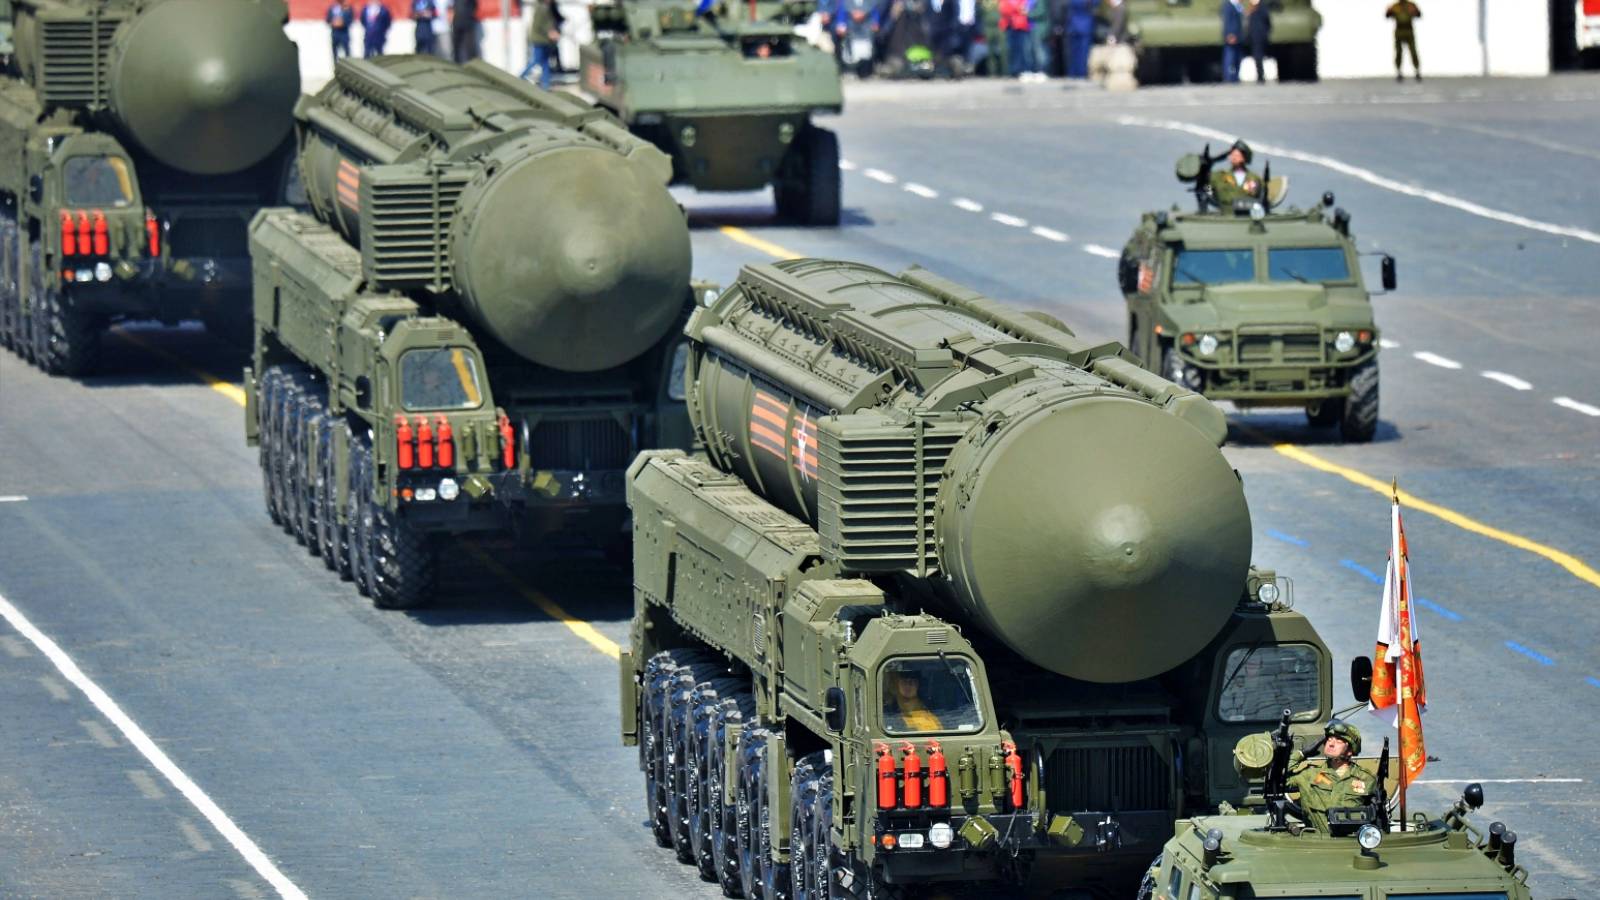 Rusland, den nukleare risiko er alvorlig, atomvåben ville blive brugt i den tredje verdenskrig